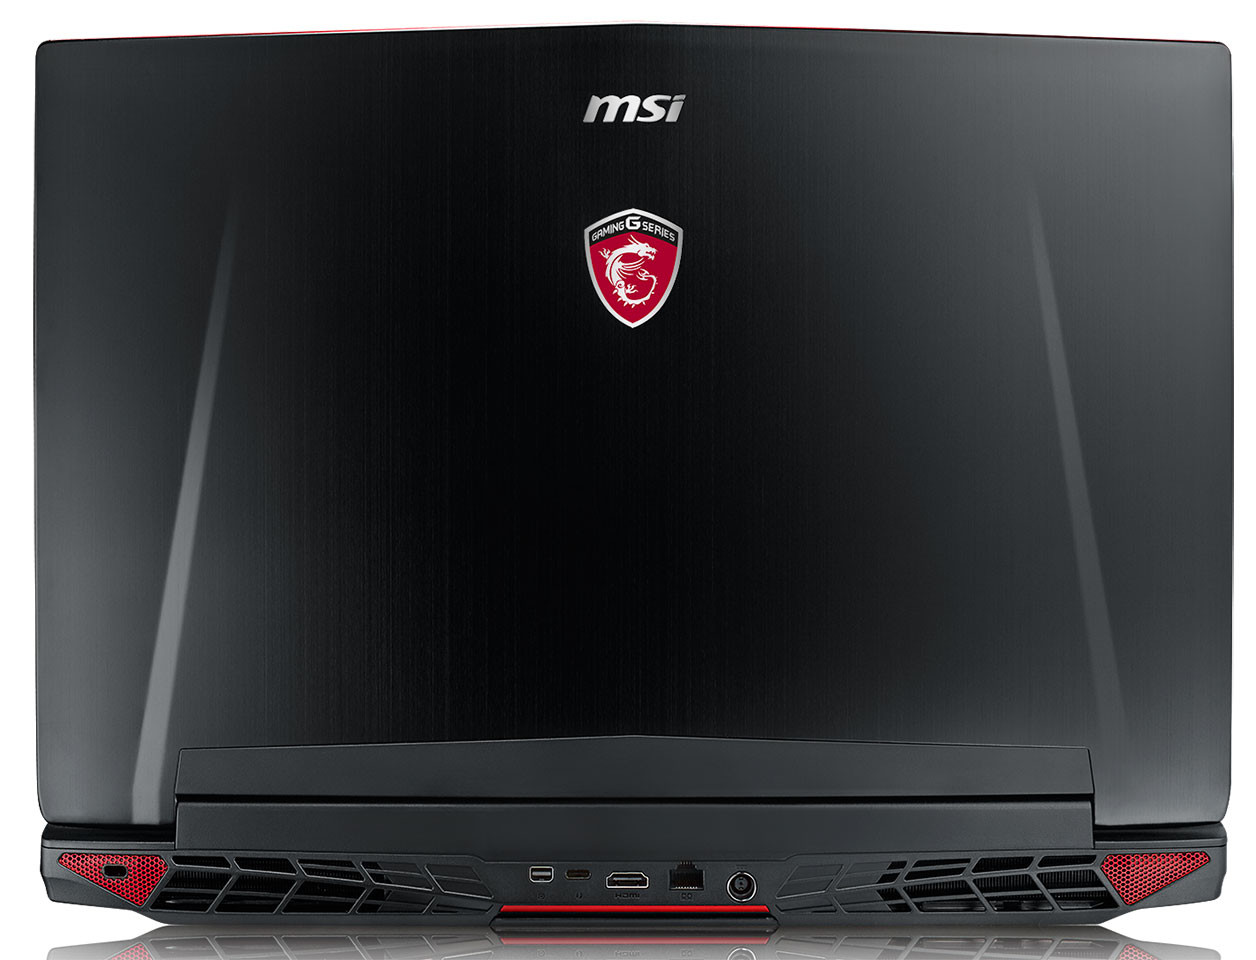 Η MSI ανακοίνωσε το νέο GT72 Dominator Pro G limited edition notebook με Nvidia GeForce GTX 980